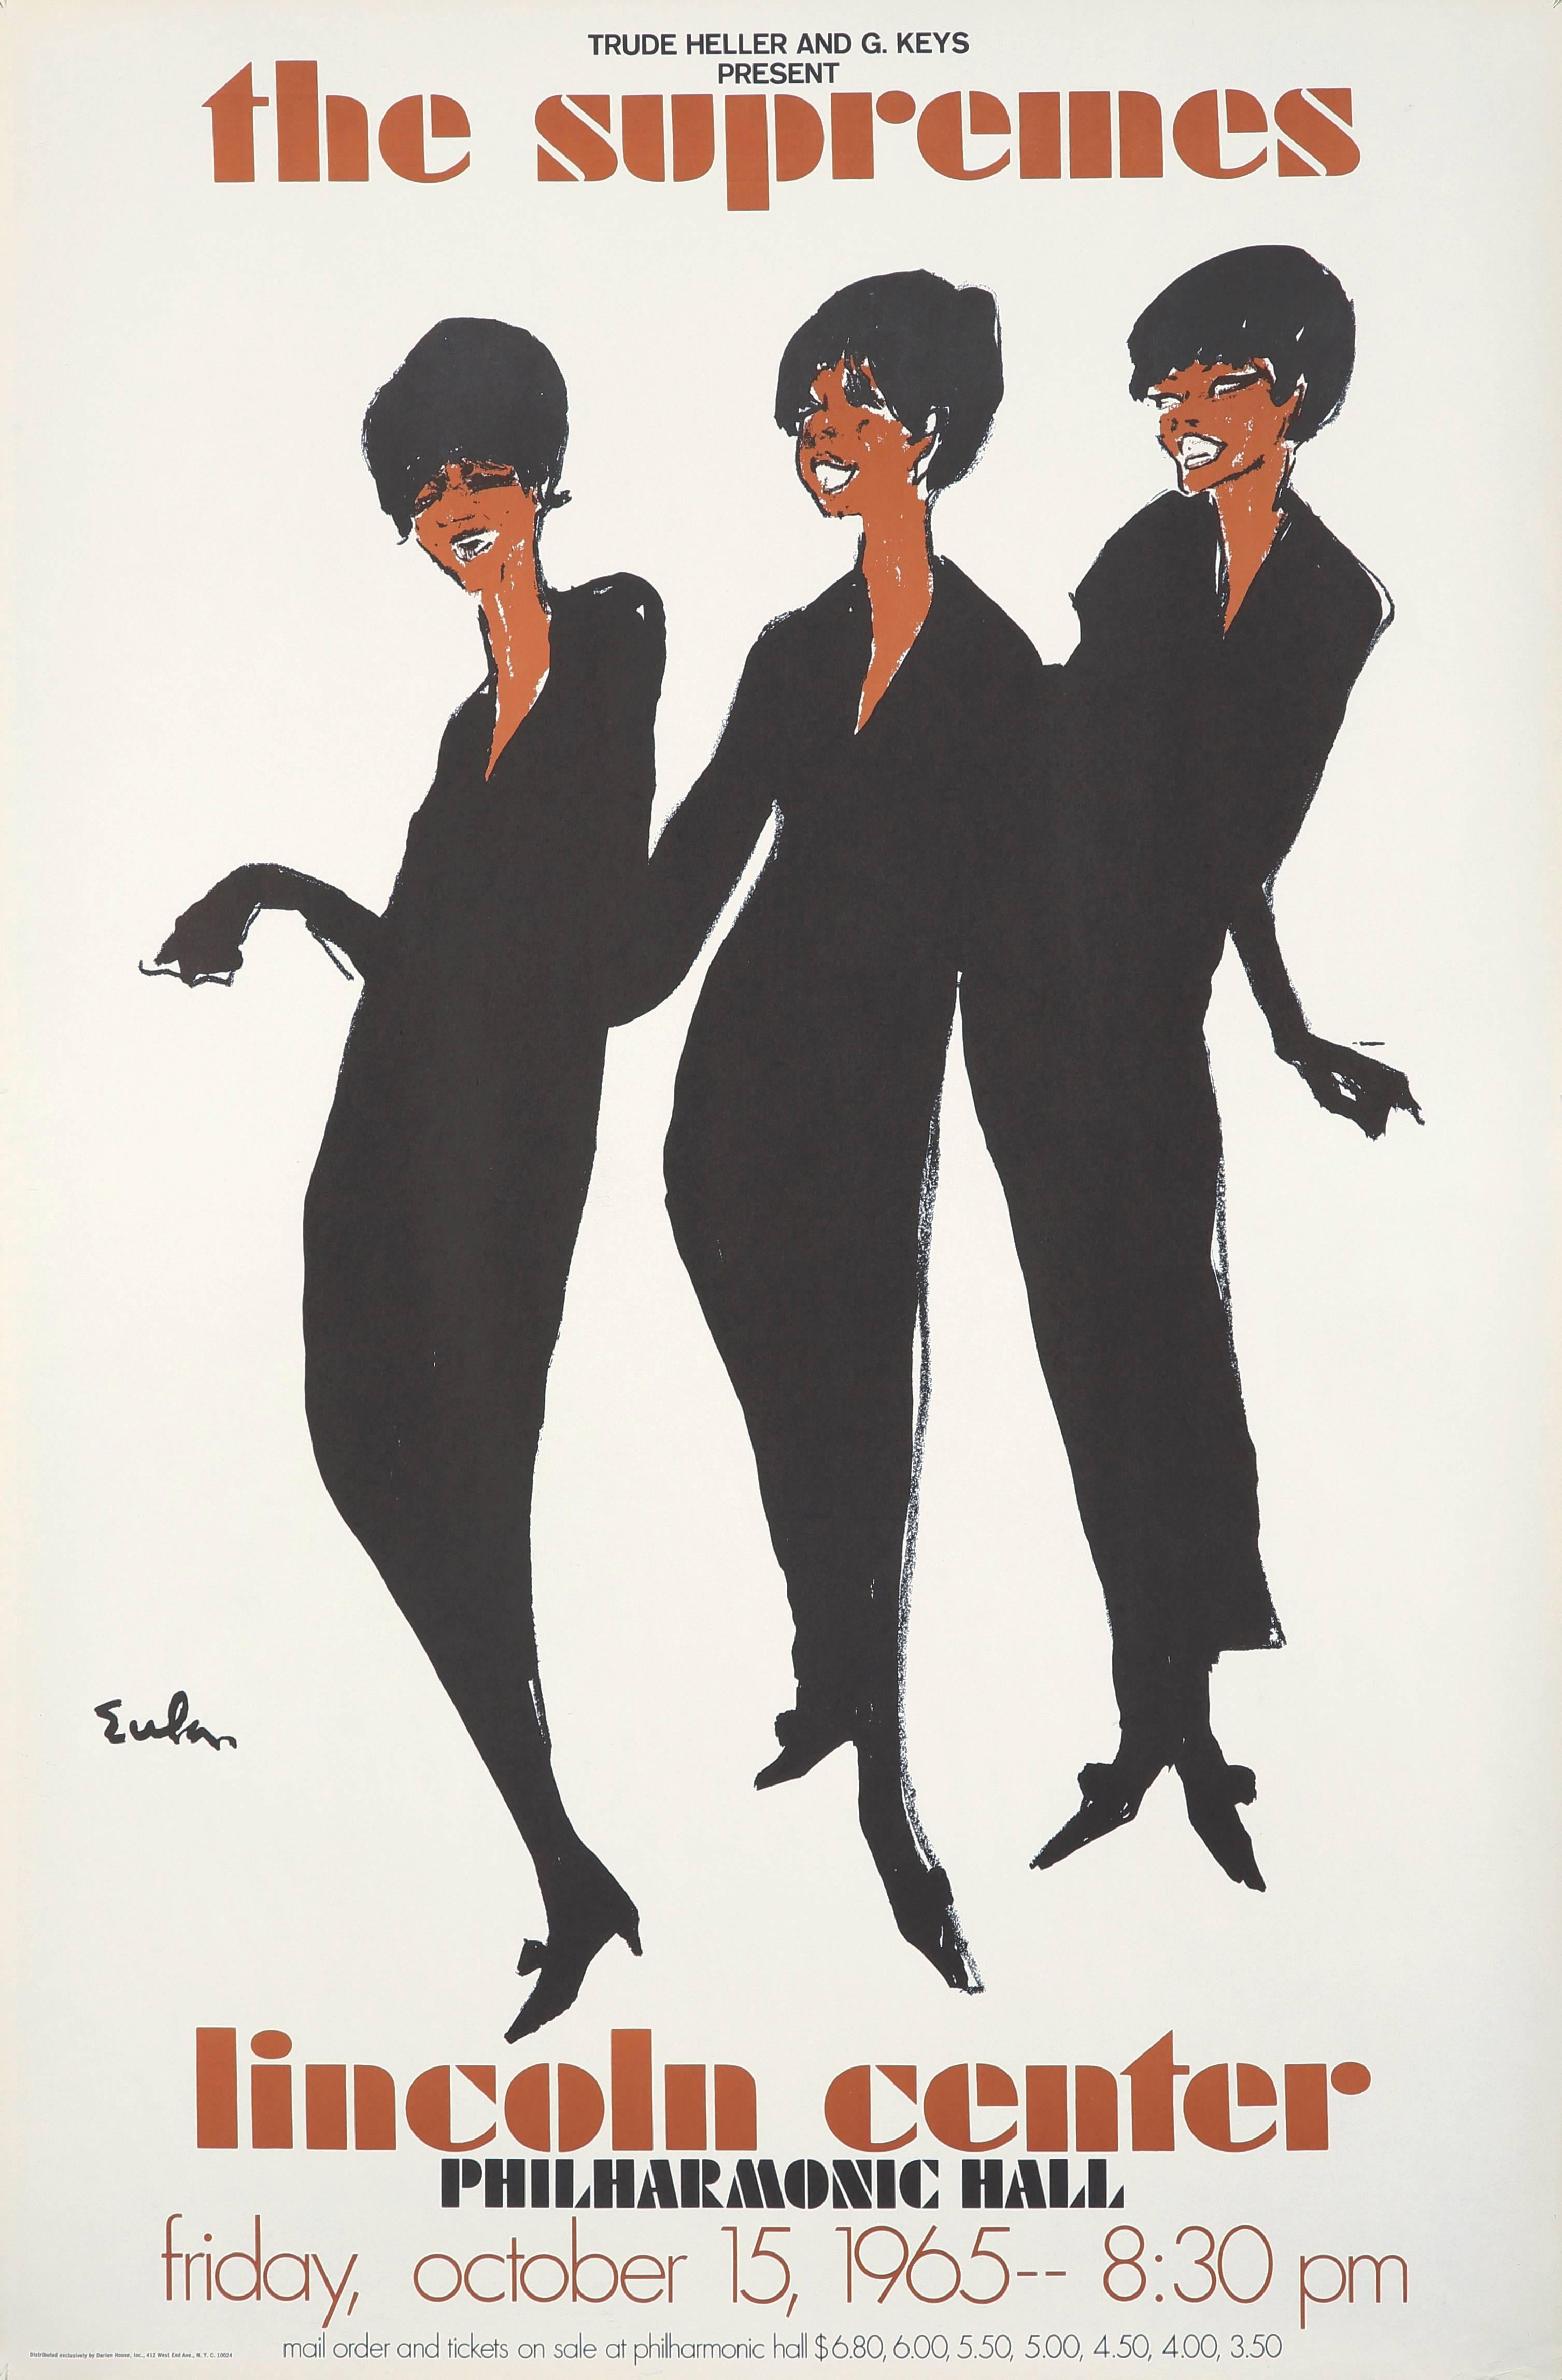 Joe Eula, affiche promotionnelle originale et vintage des Supremes :
Parmi les illustrations les plus célèbres d'Eula, cette œuvre à la mode et pleine d'âme a été publiée en 1965 pour annoncer le concert du légendaire groupe Motown au Lincoln Center